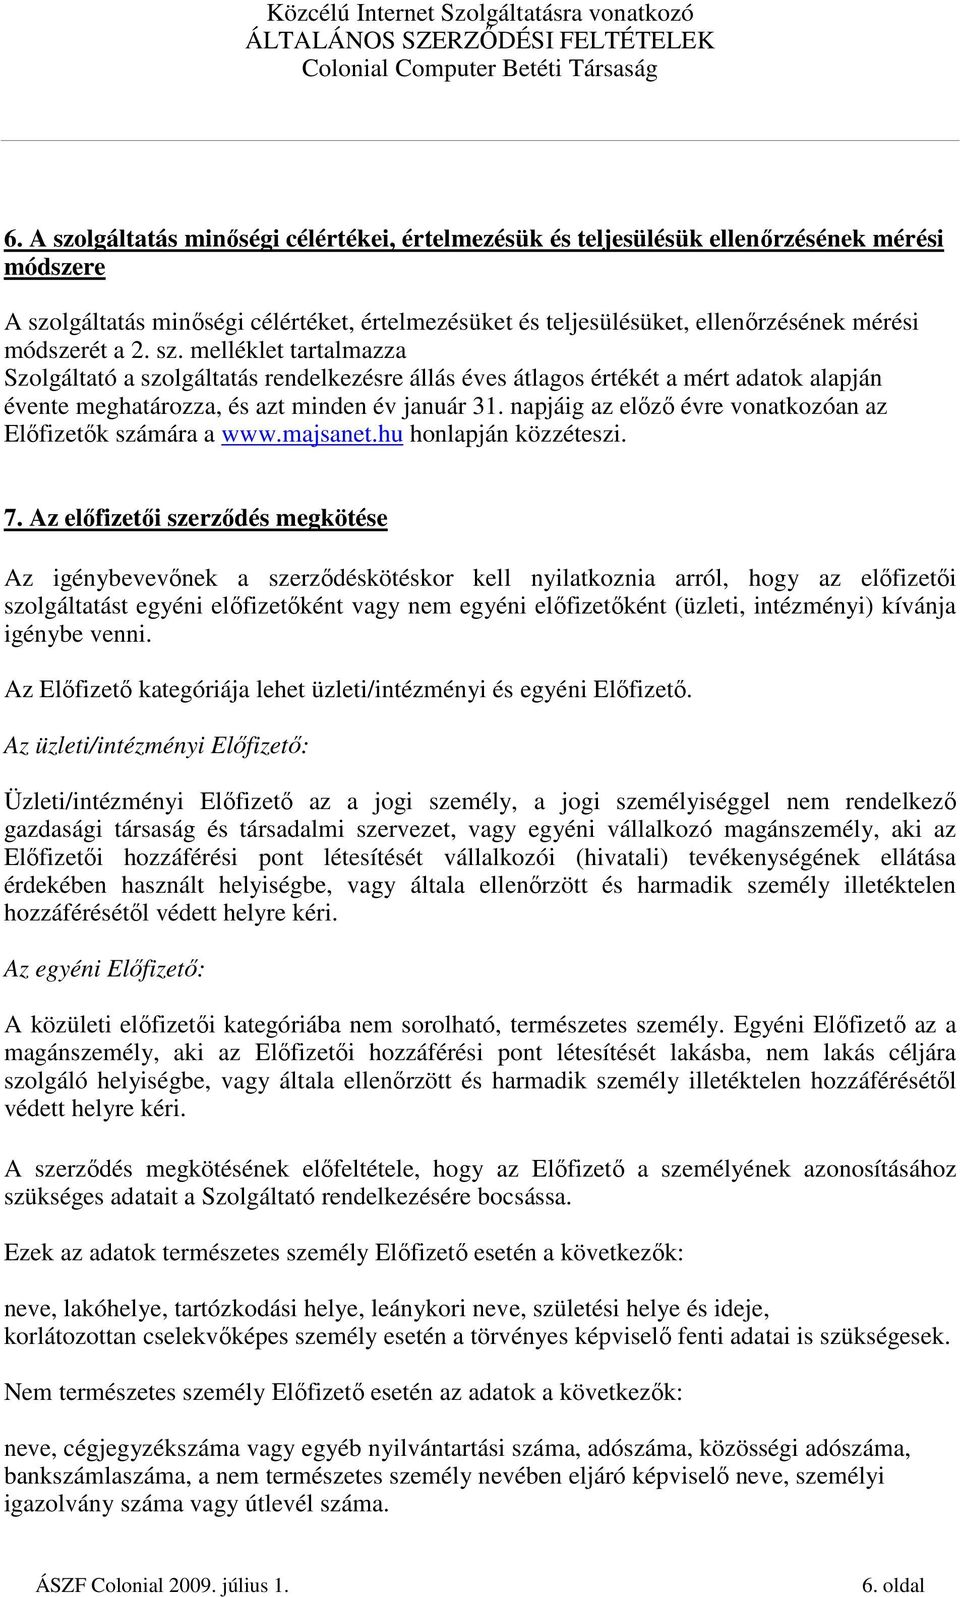 napjáig az elızı évre vonatkozóan az Elıfizetık számára a www.majsanet.hu honlapján közzéteszi. 7.